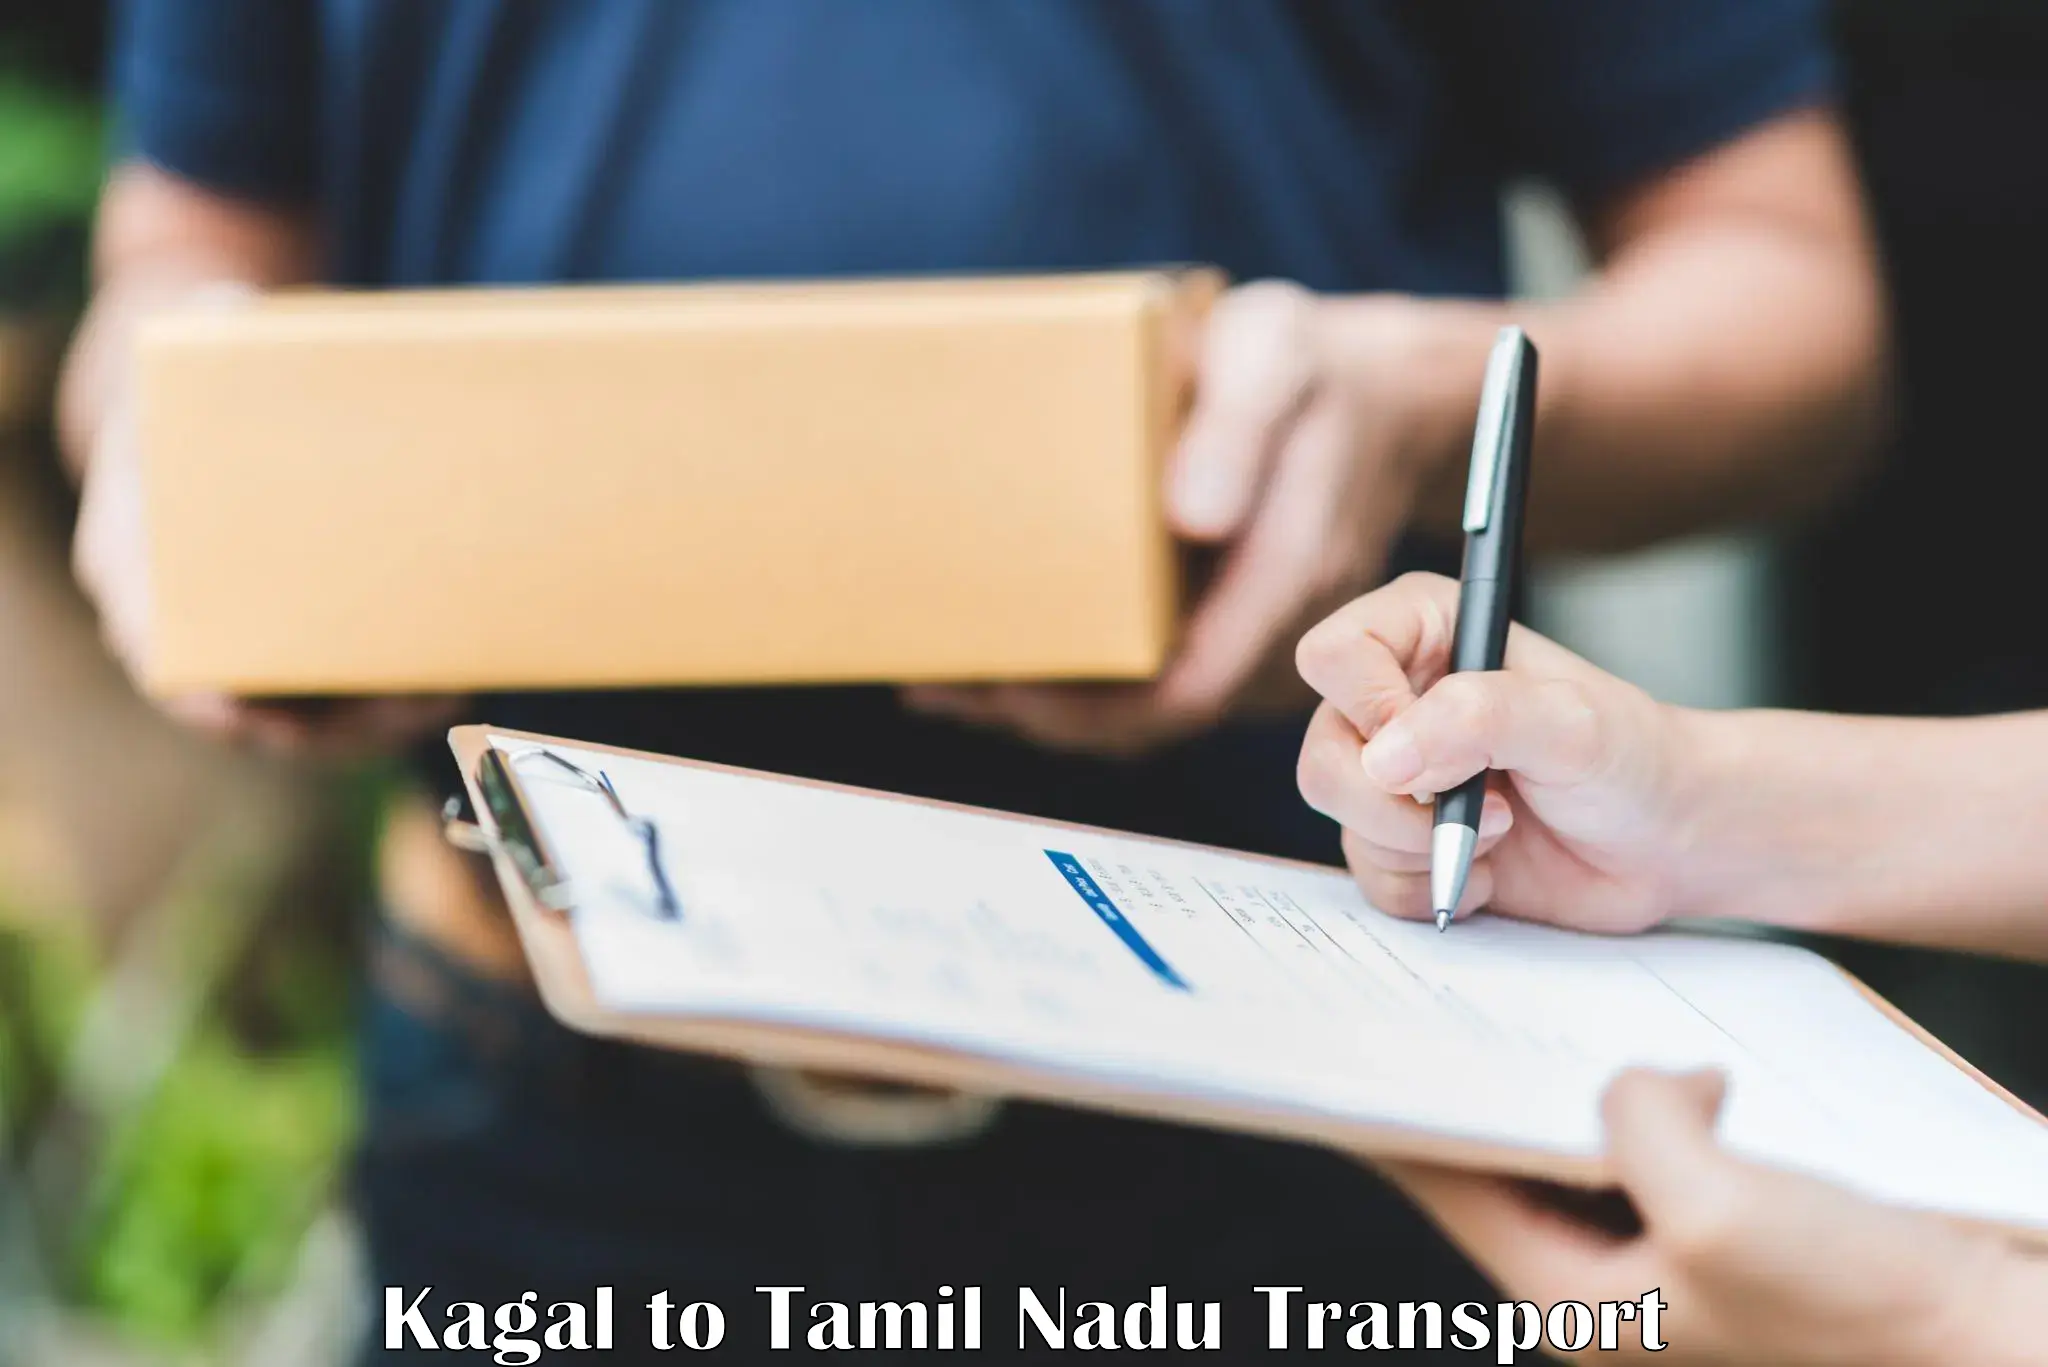 Nearest transport service Kagal to Tamil Nadu